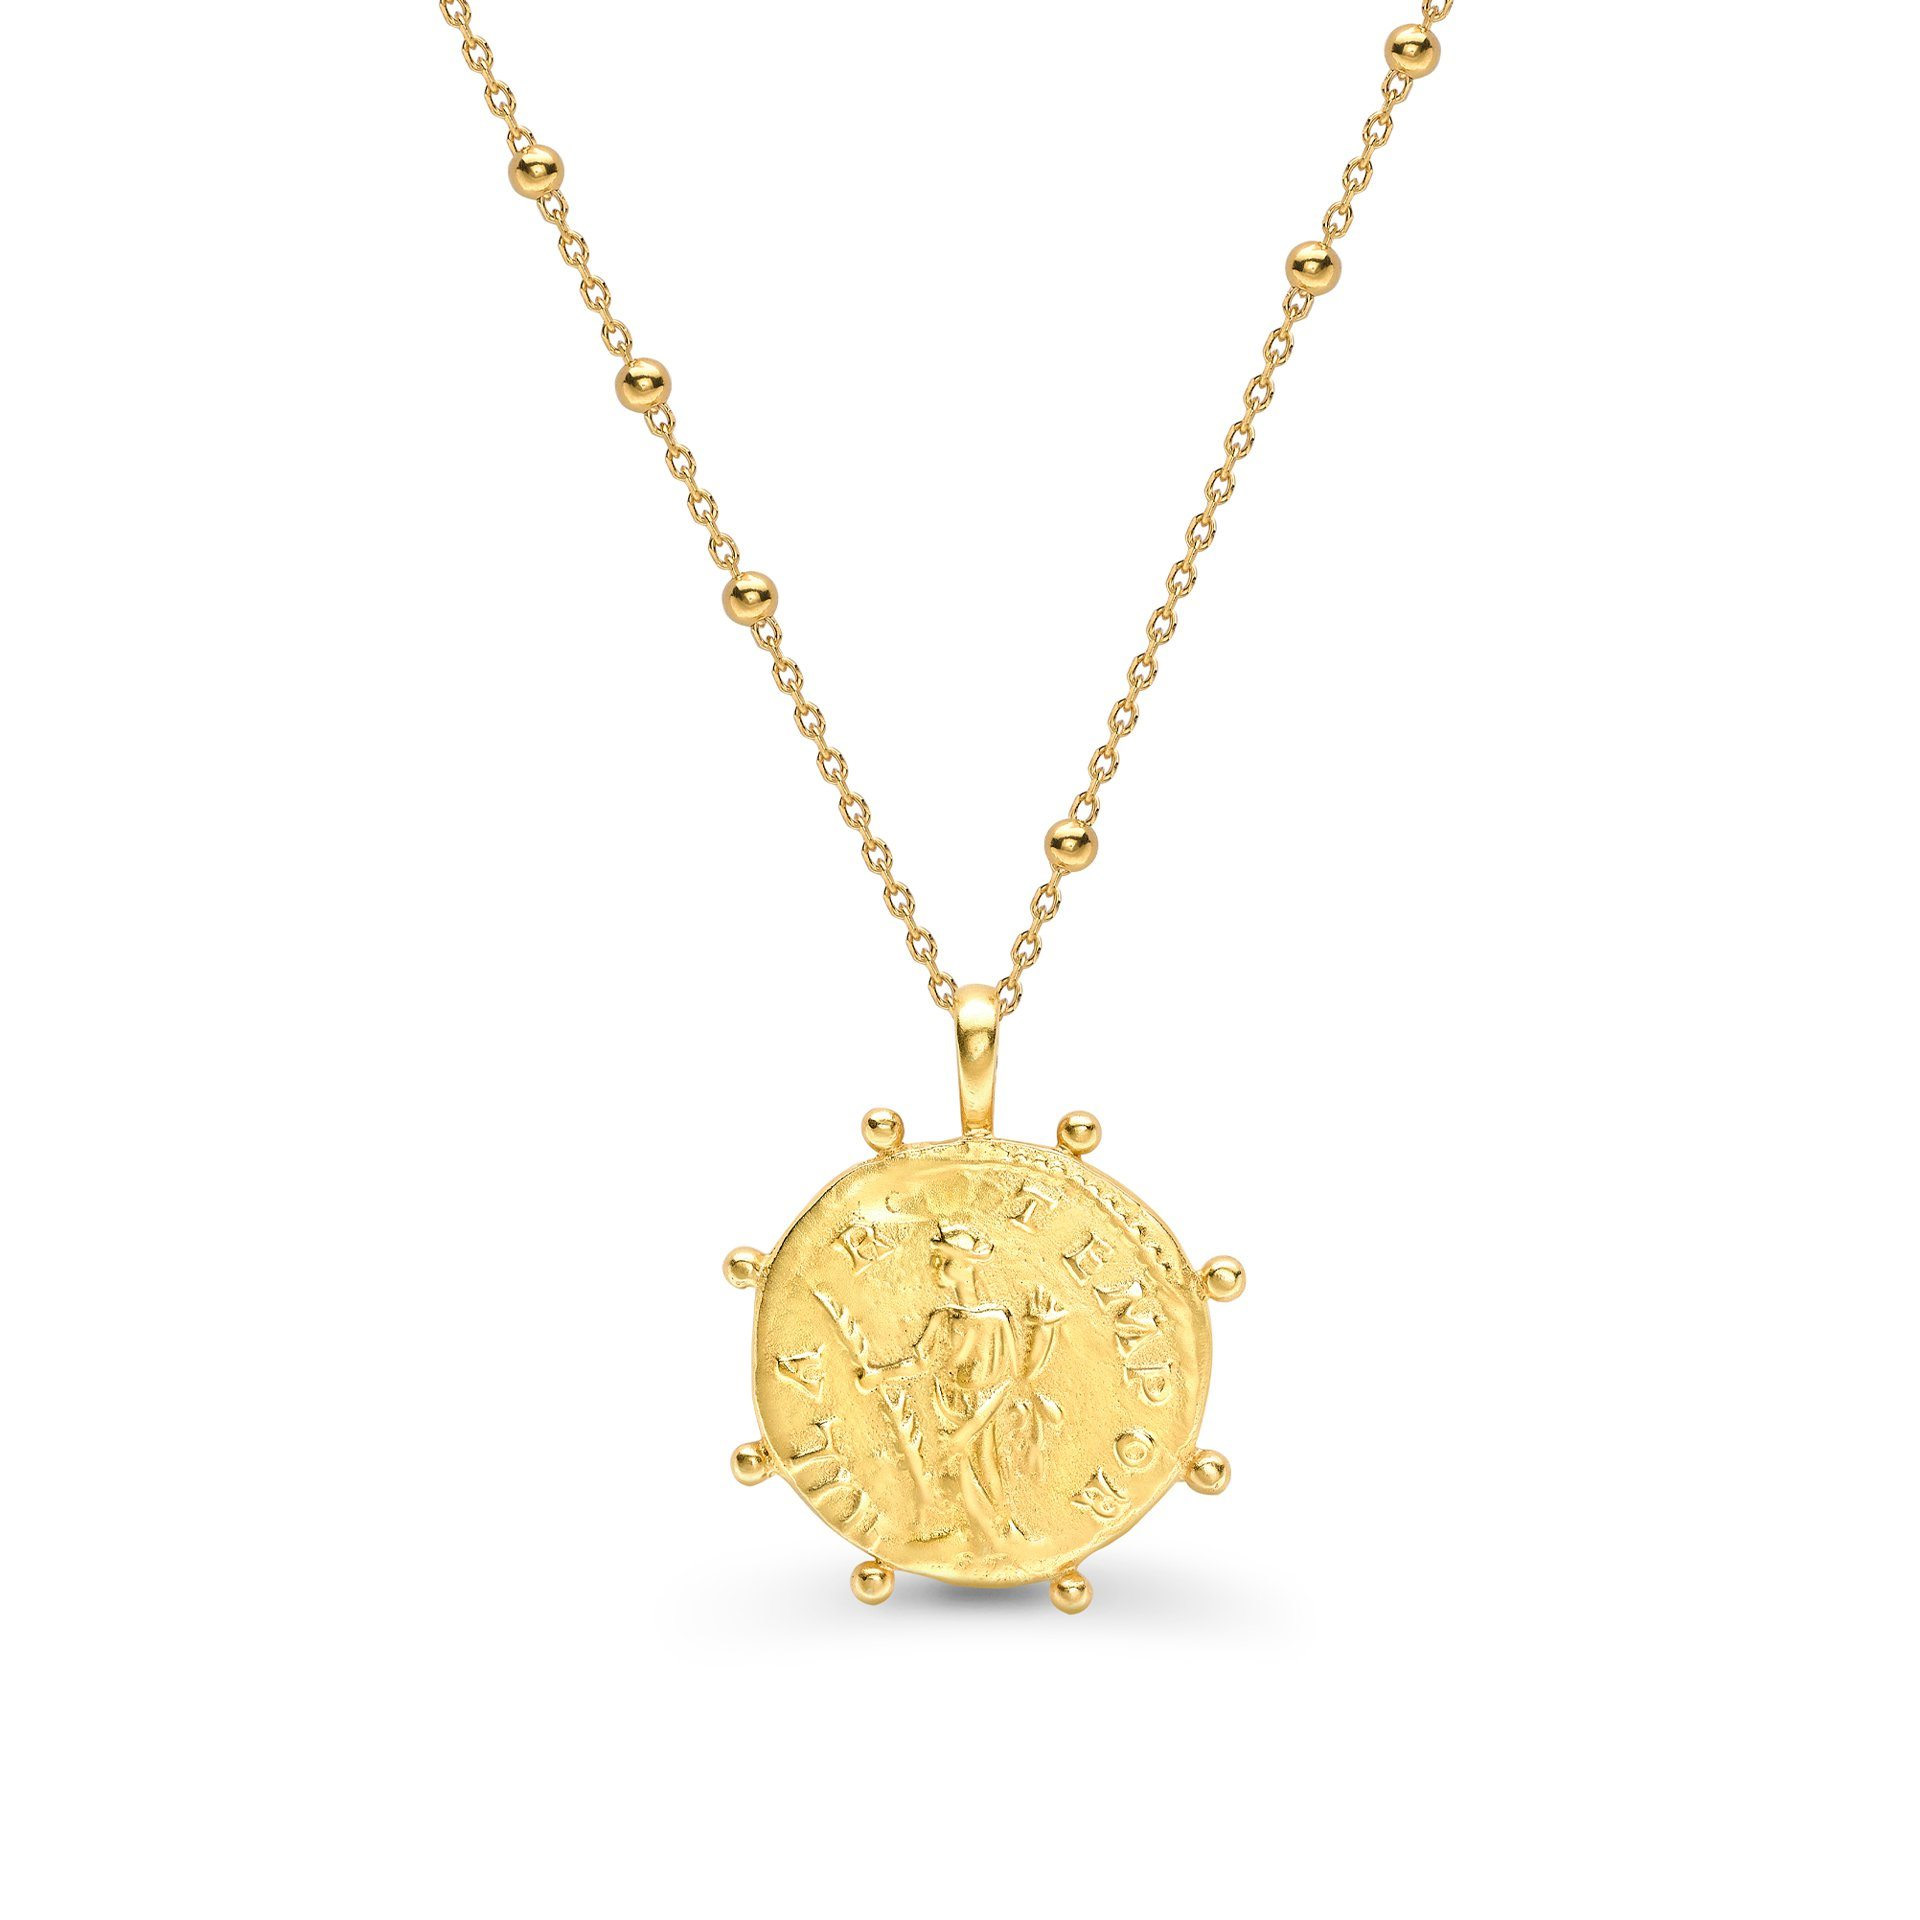 الجملة مجوهرات OEM / ODM قلادة من الذهب عيار 18 قيراطًا مع عملة رومانية على مجوهرات فضية سلسلة مطرزة